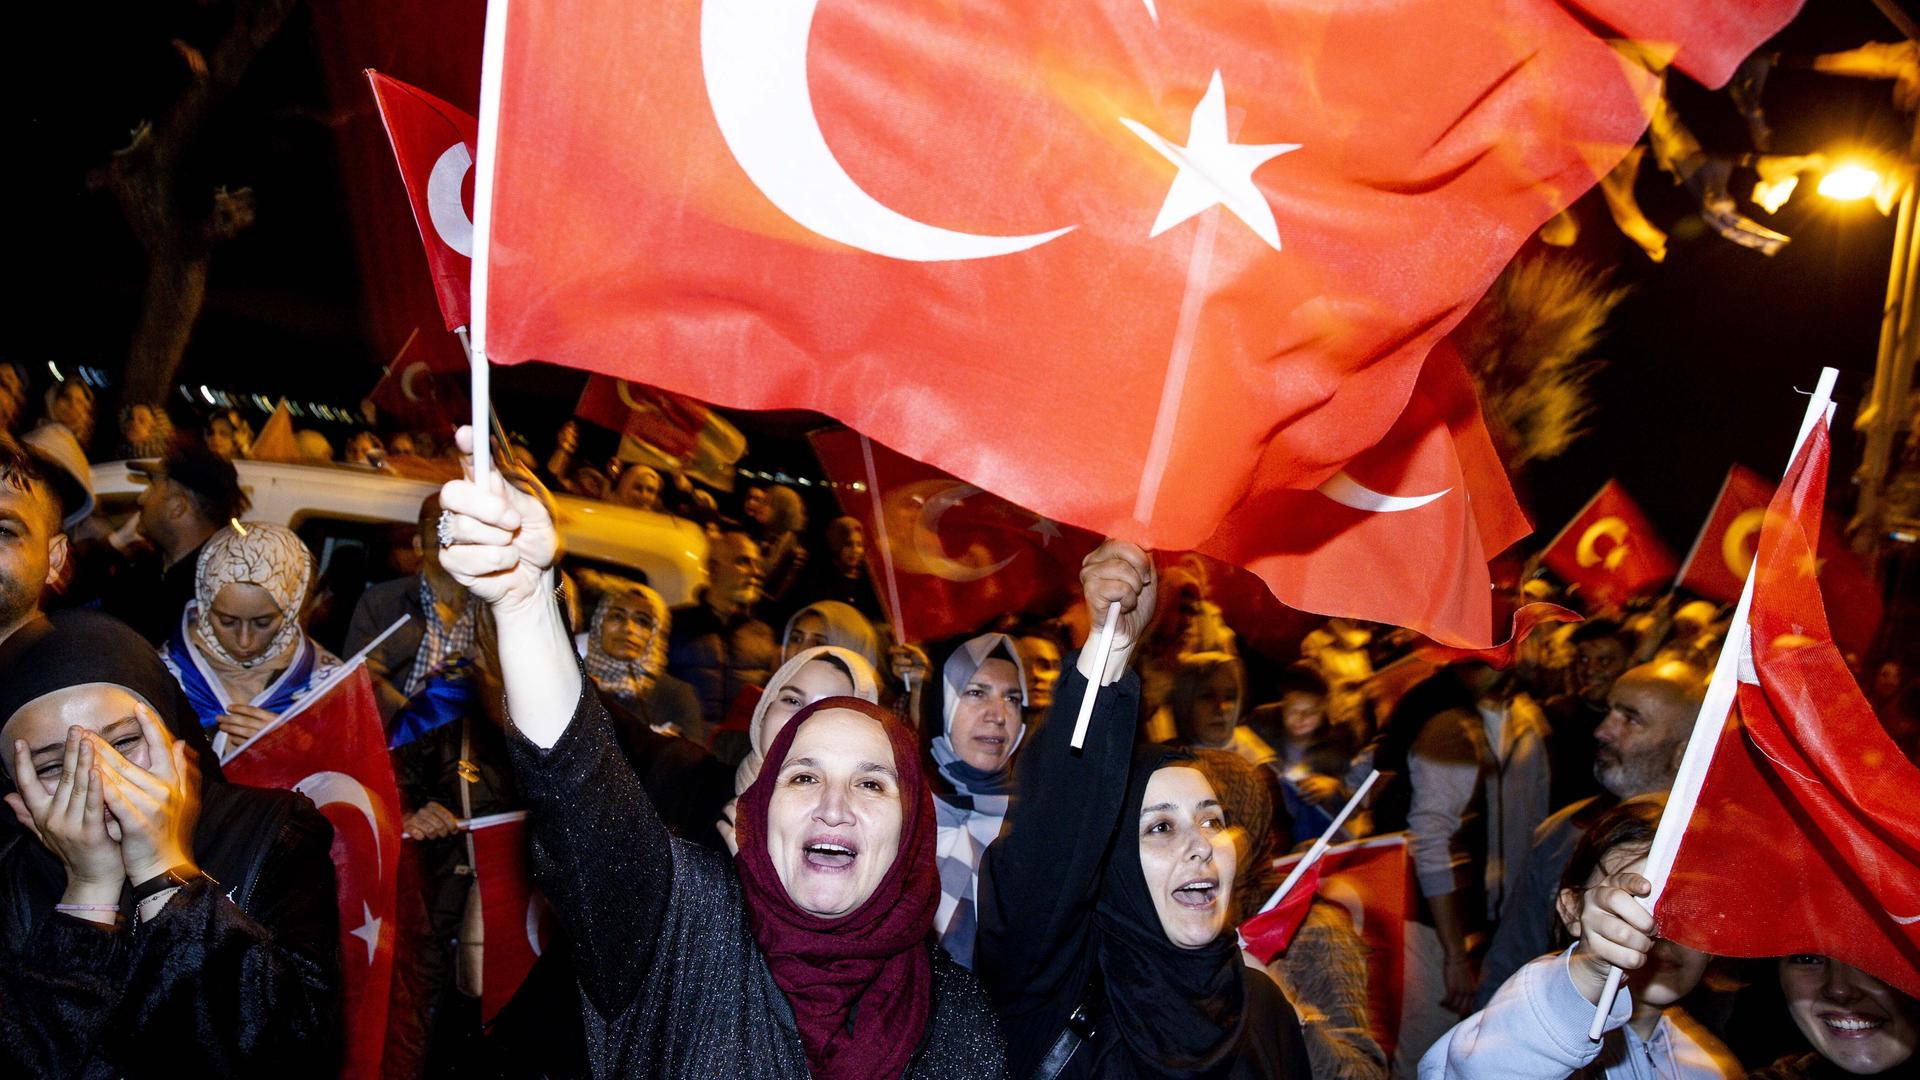 Türkei-Wahl - Wahlbeobachter sprechen von "ungerechtfertigten" Vorteilen für Erdogan